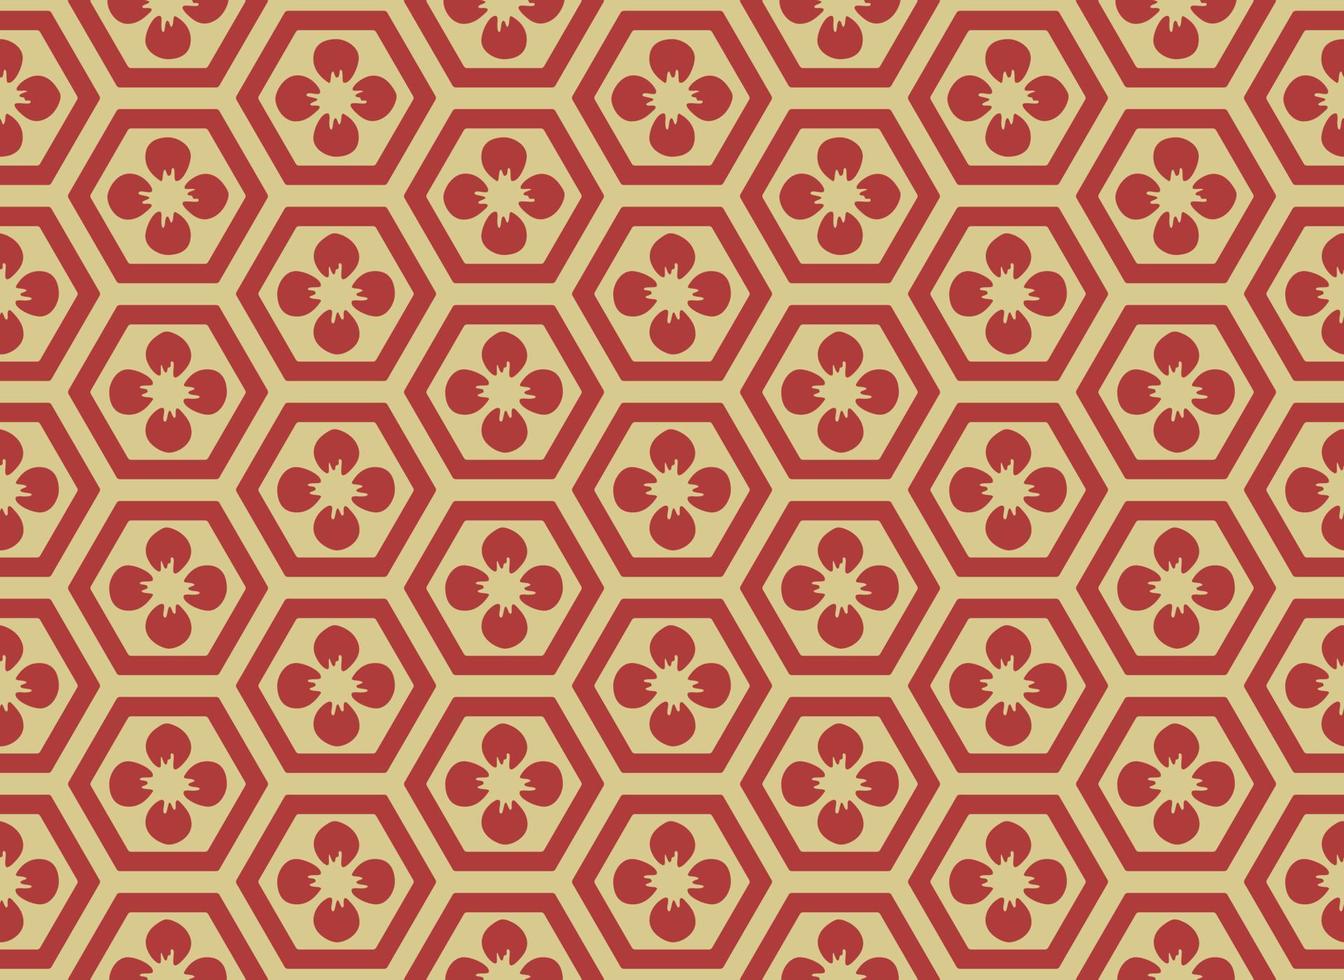 traditioneel Aziatisch zeshoekpatroon, naadloos tegels vectorontwerp. retro geïnspireerd oosters design, met rode en gouden kleuren vector